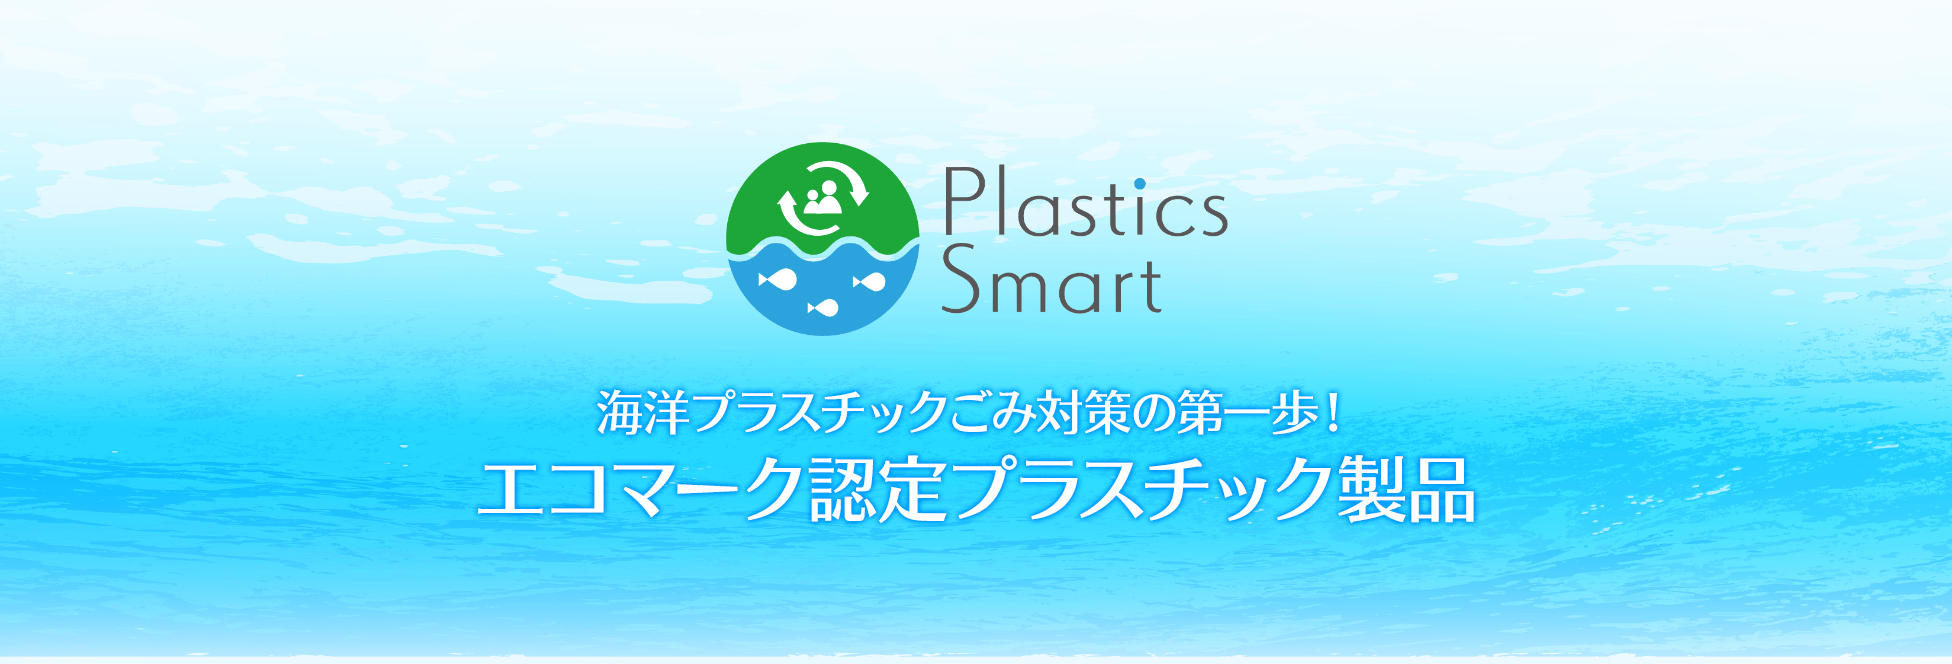 海洋プラスチックごみ対策の第一歩！エコマーク認定プラスチック製品ト